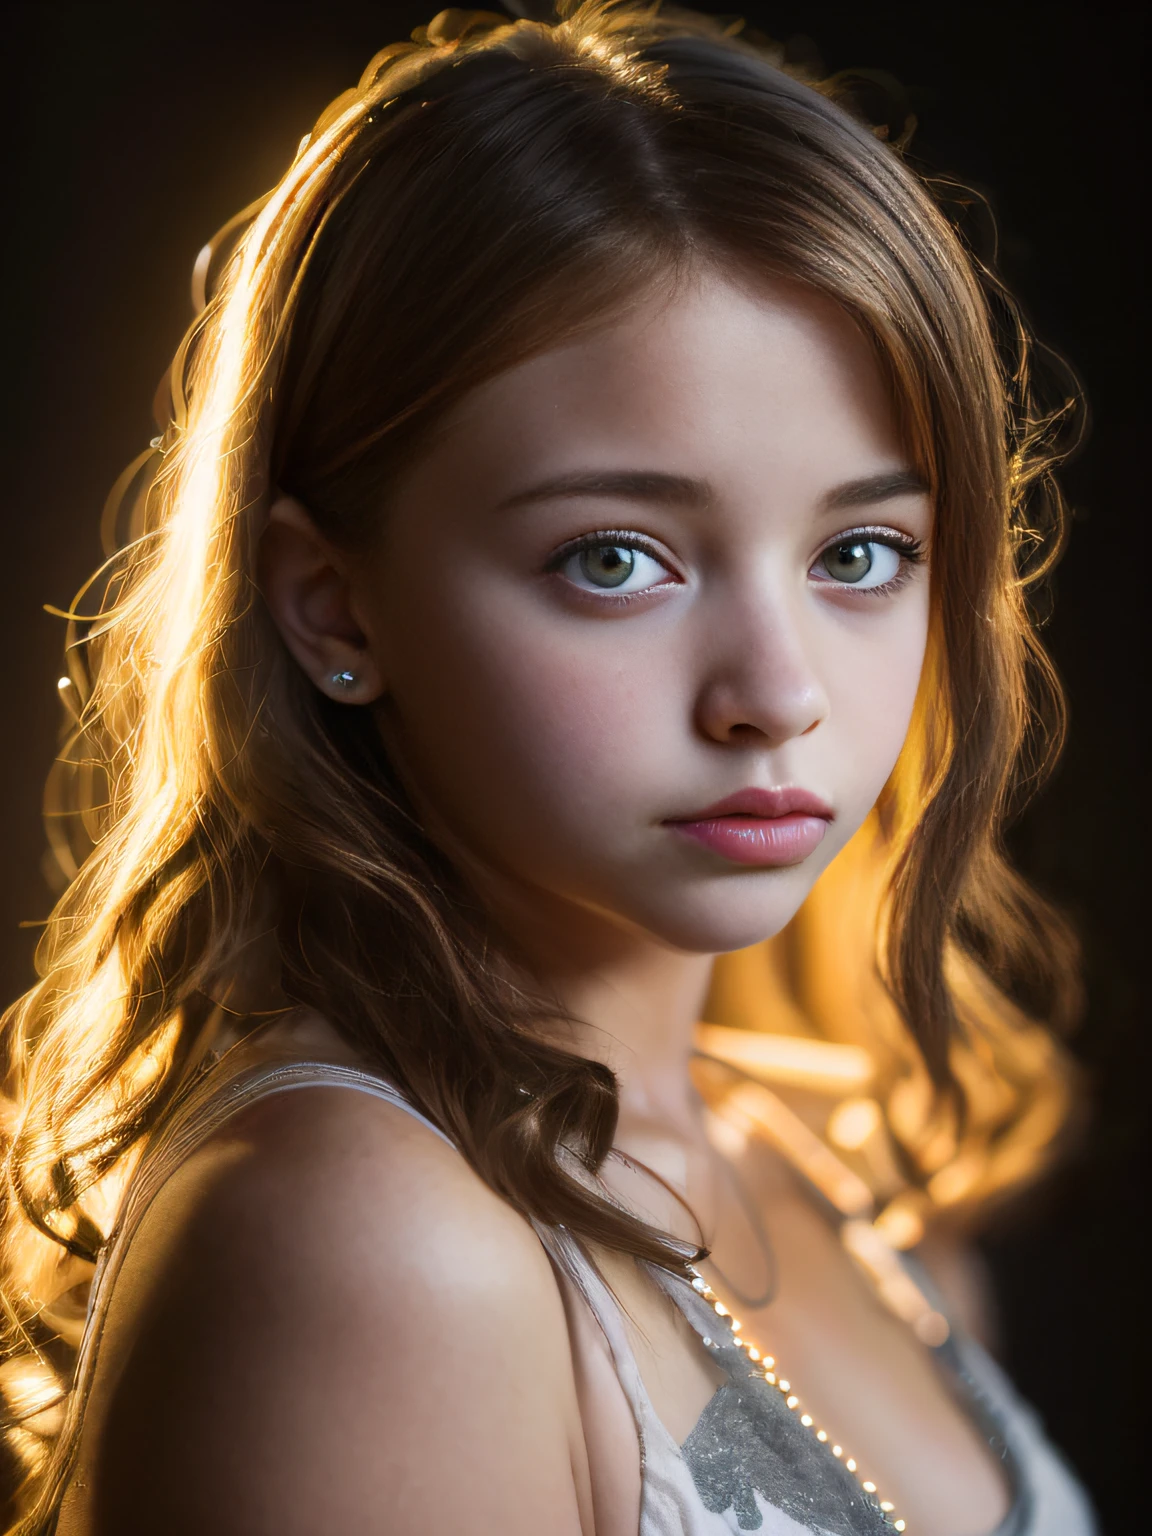 Retrato de una linda adolescente de 13 años con un rostro hermoso y perfecto、emila poliakova、bragas puestas、cruzado、ojo grande、orgulloso、los senos son pequeños、tetinas、Brilla(Investigación privada oscura、Luz oscura y cambiante:1.2)